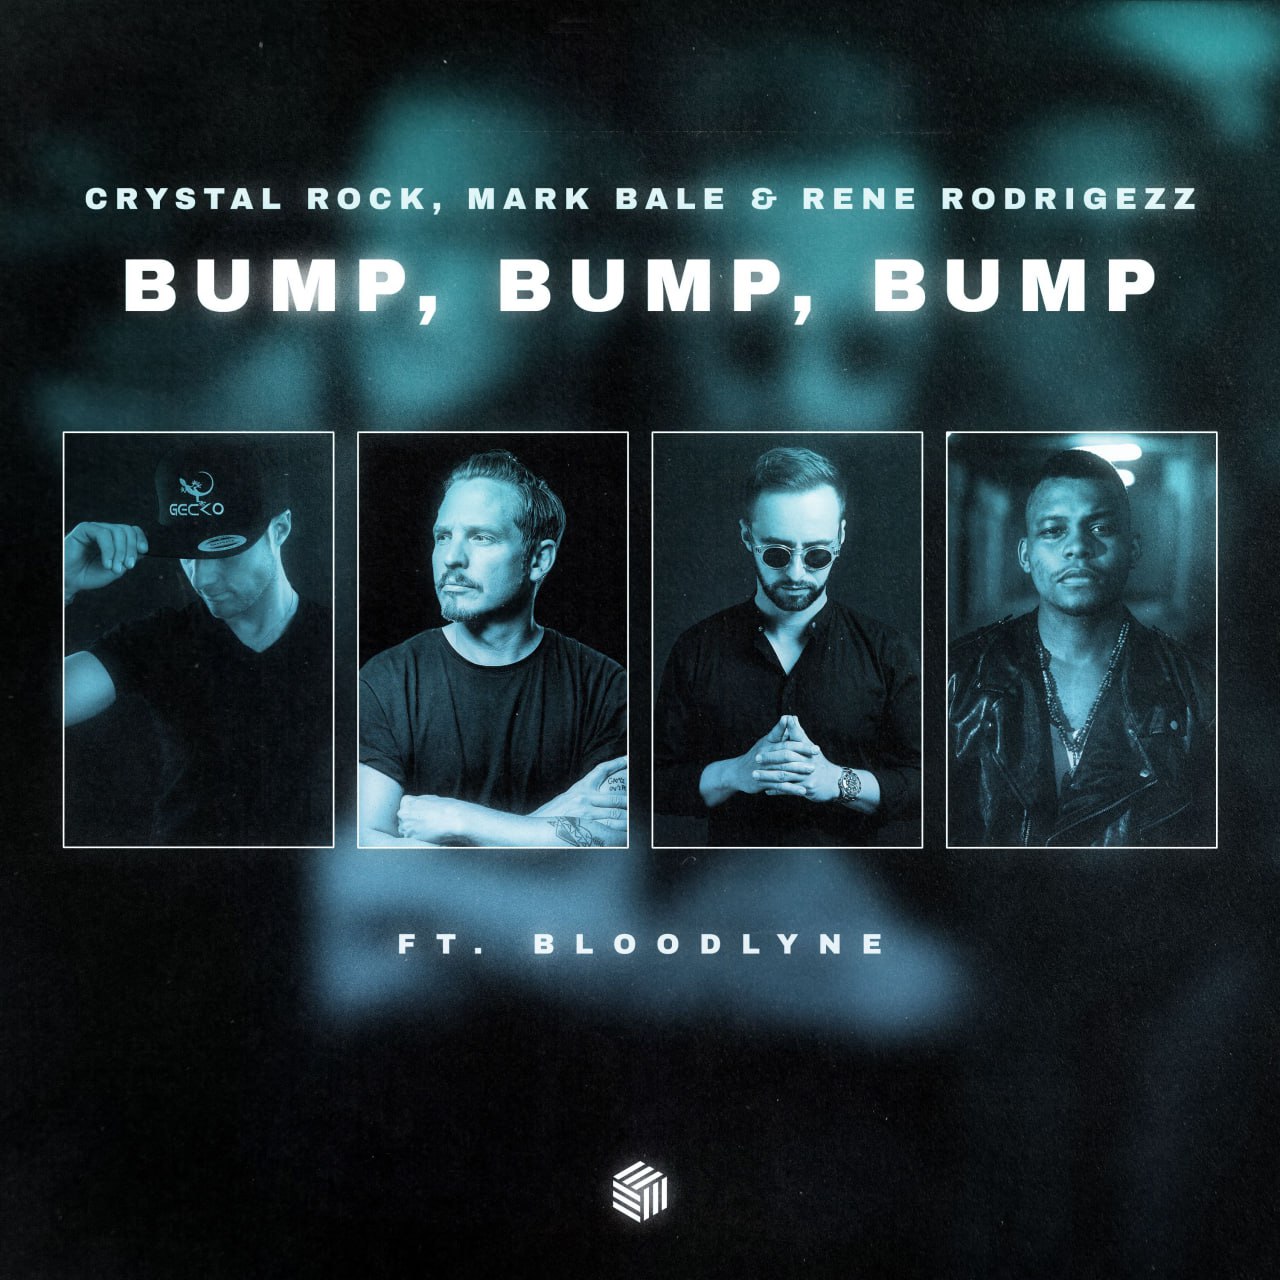 Crystal Rock, Mark Bale & Rene Rodrigezz feat. Bloodlyne - Bump, Bump, Bump (Extended Mix)